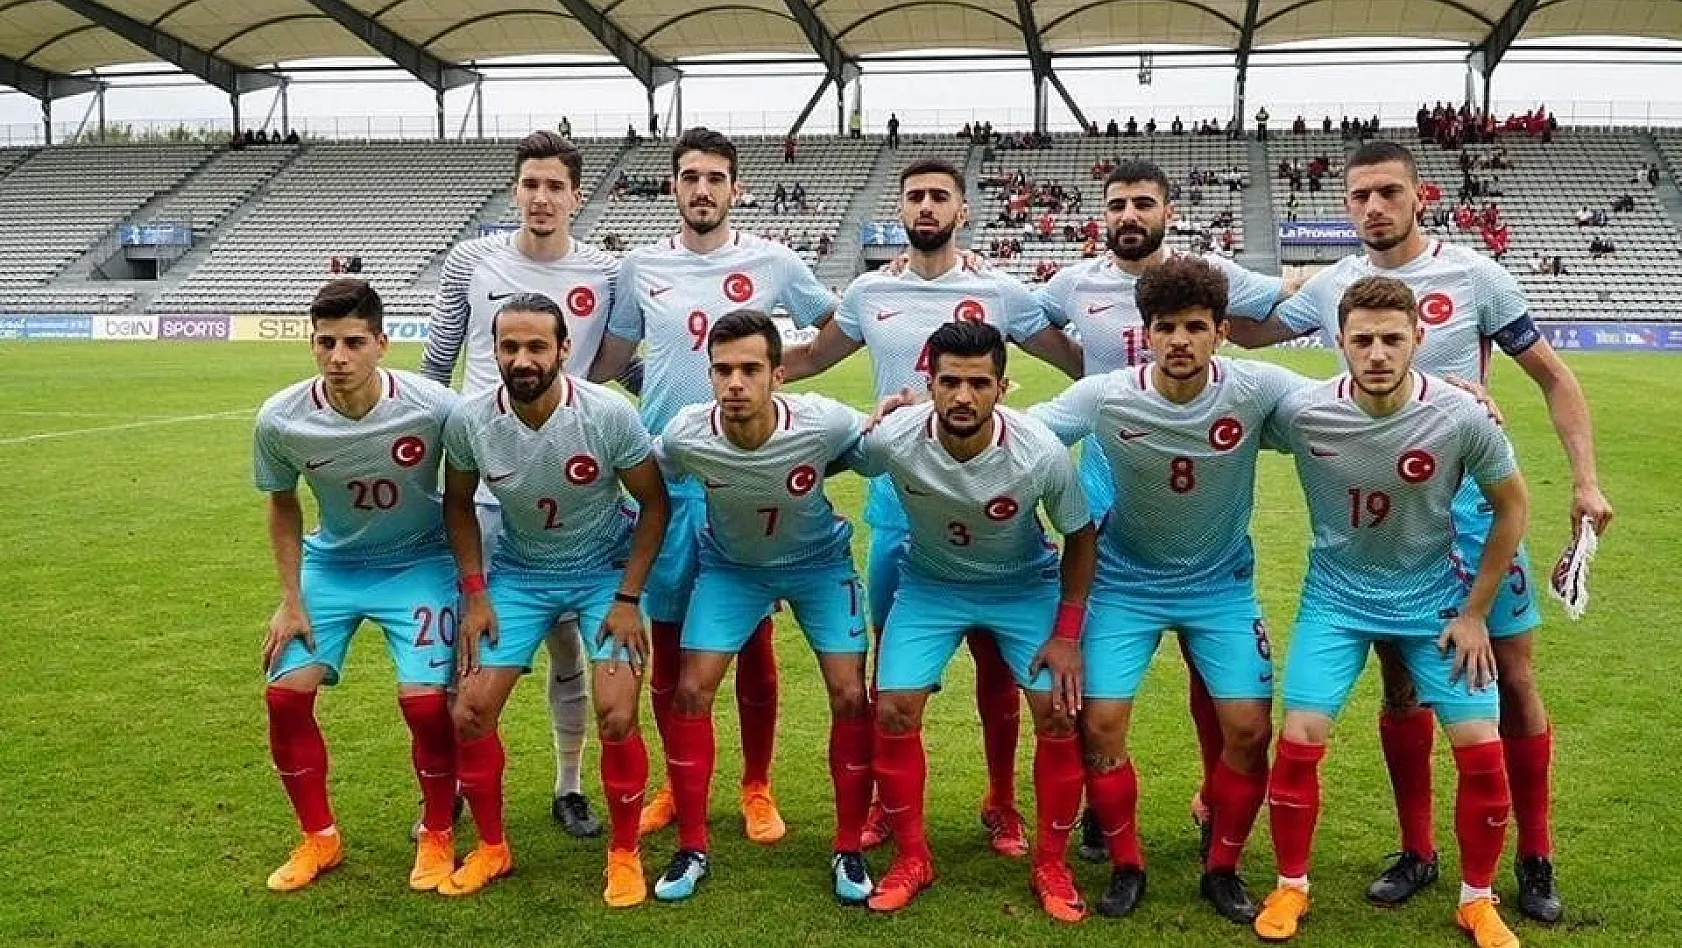 Finale yükselen U20 Milli takımında E.Y. Malatyasporlu Mustafa ilk on birde sahaya çıktı 